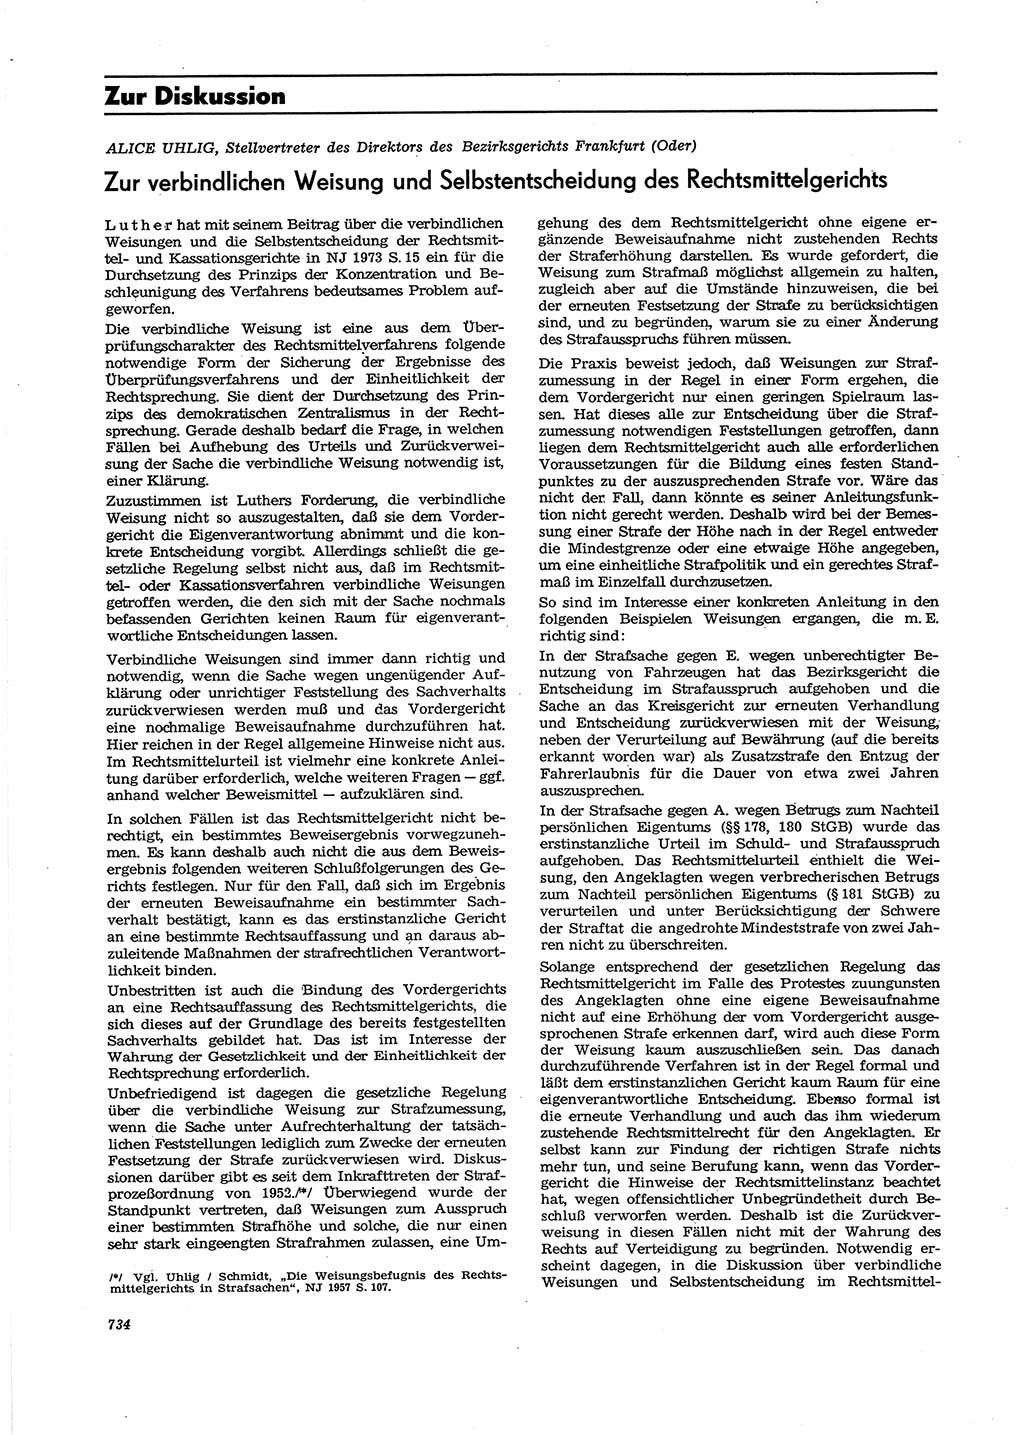 Neue Justiz (NJ), Zeitschrift für Recht und Rechtswissenschaft [Deutsche Demokratische Republik (DDR)], 27. Jahrgang 1973, Seite 734 (NJ DDR 1973, S. 734)